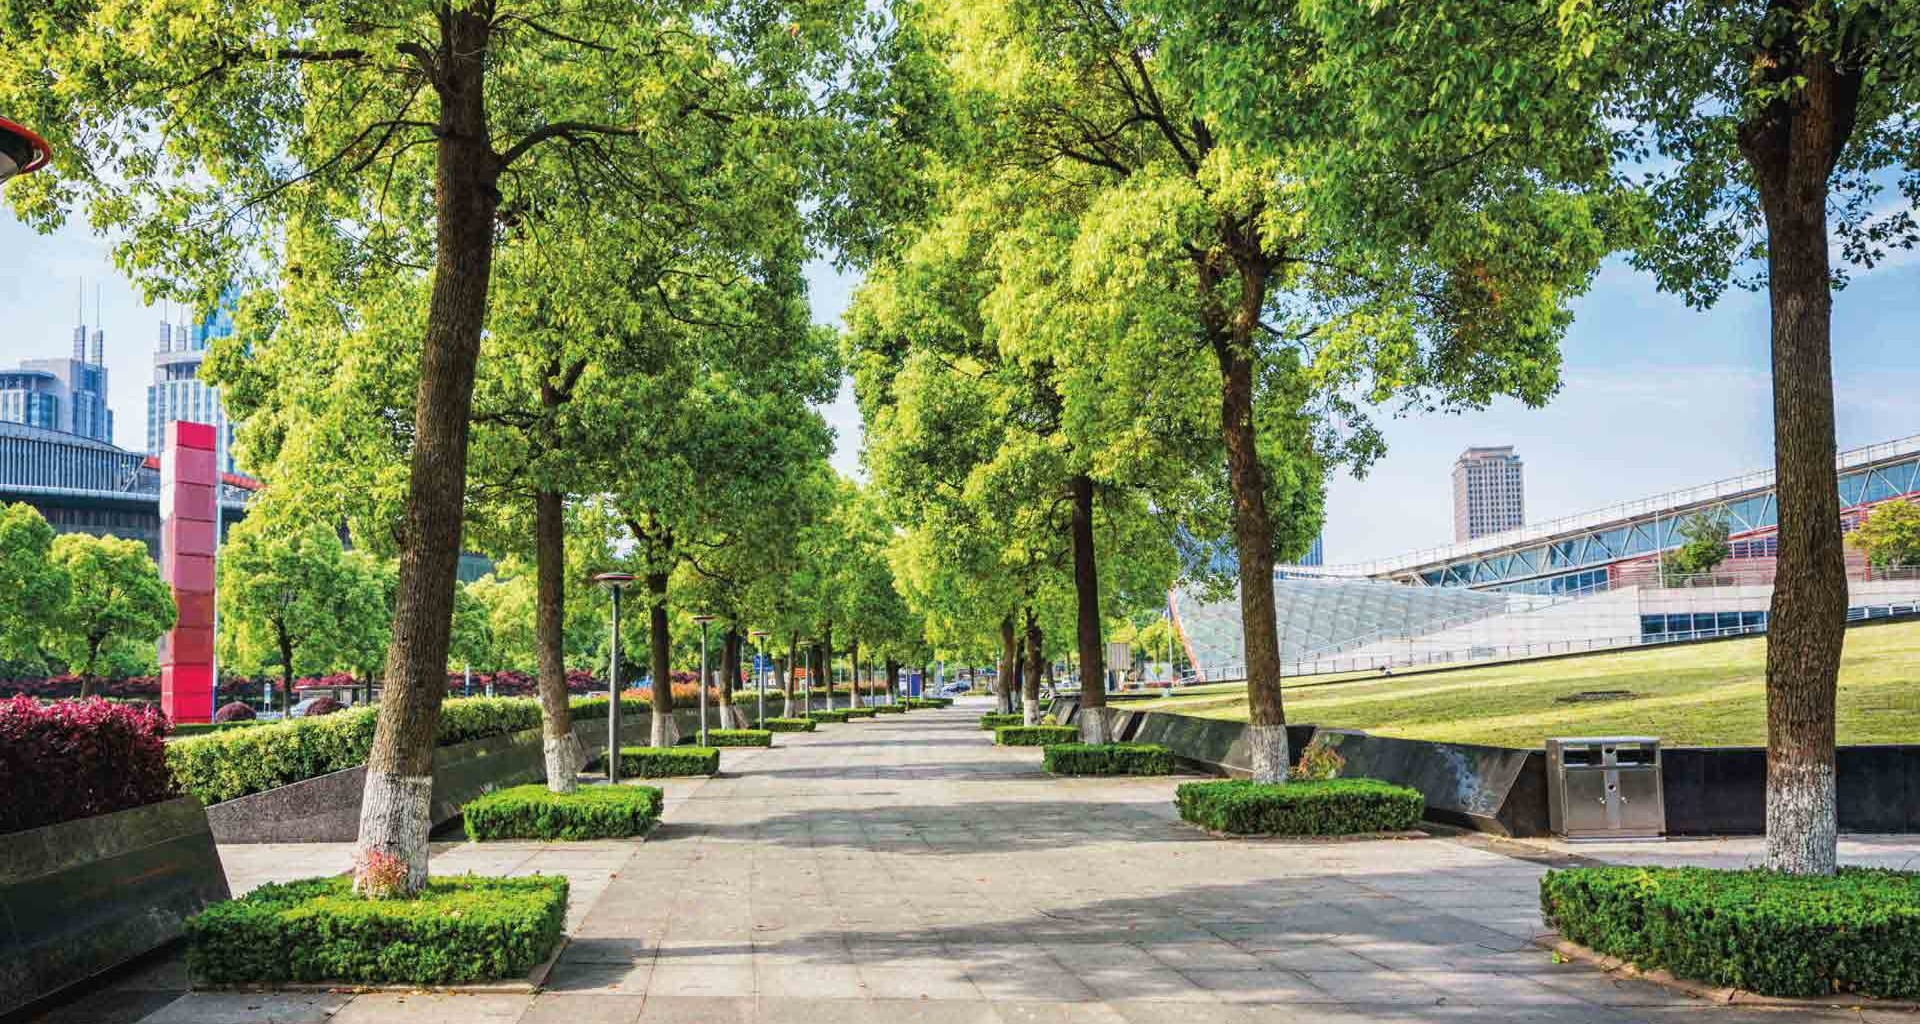 Oasis urbanos son un espacio verde sustentable en la ciudad